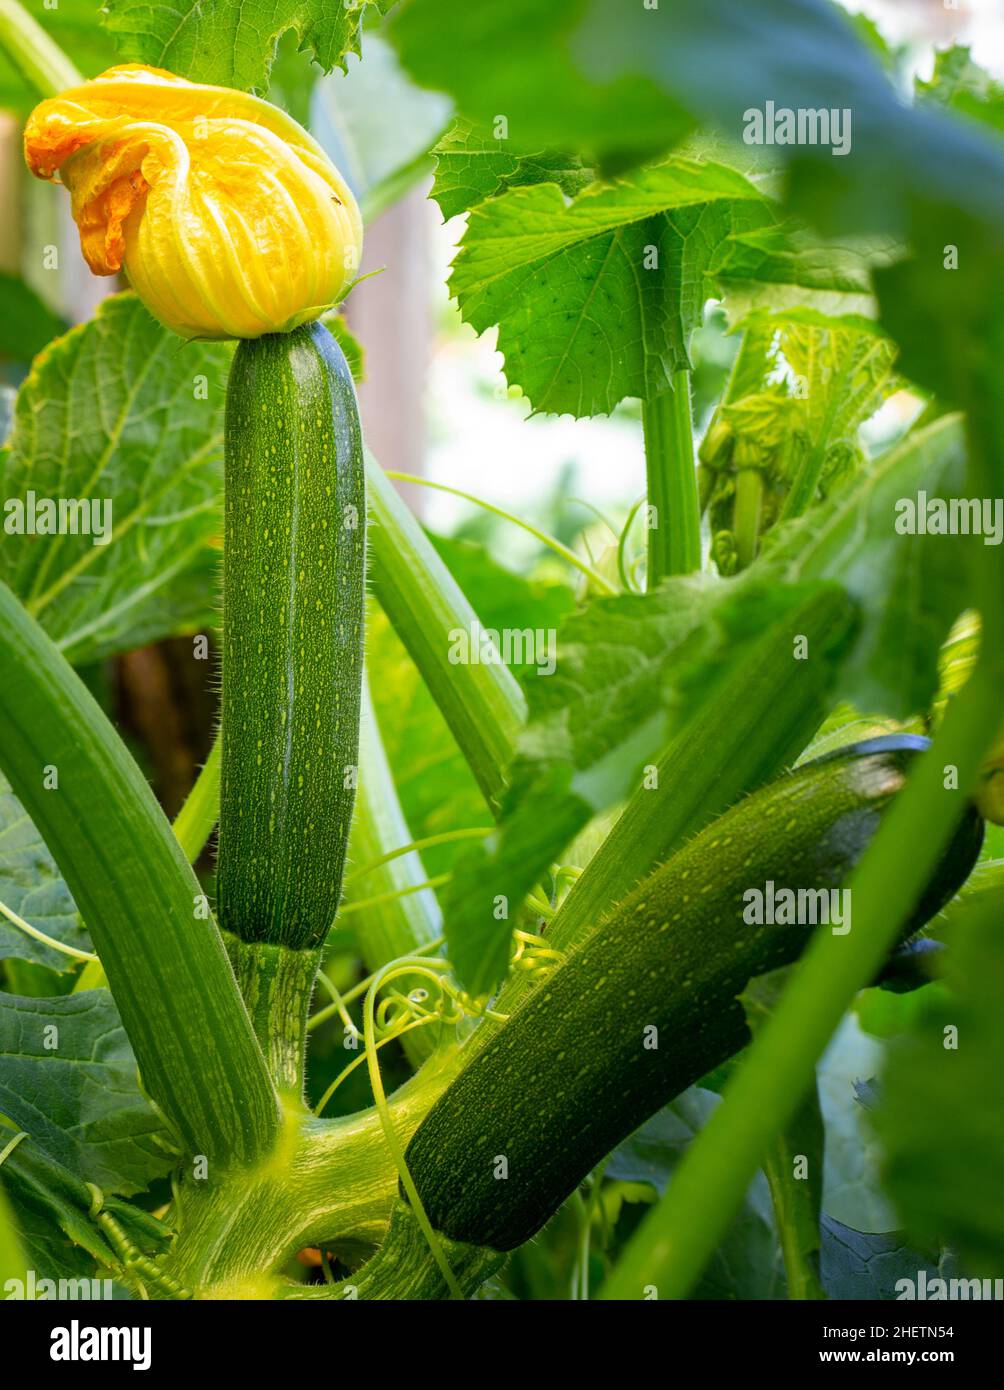 Calabacines, o calabacines cultivados orgánicamente, flores y frutas prolíficamente, proporcionando un suministro constante de verduras de verano. Un jardín en Nueva Zelanda Foto de stock